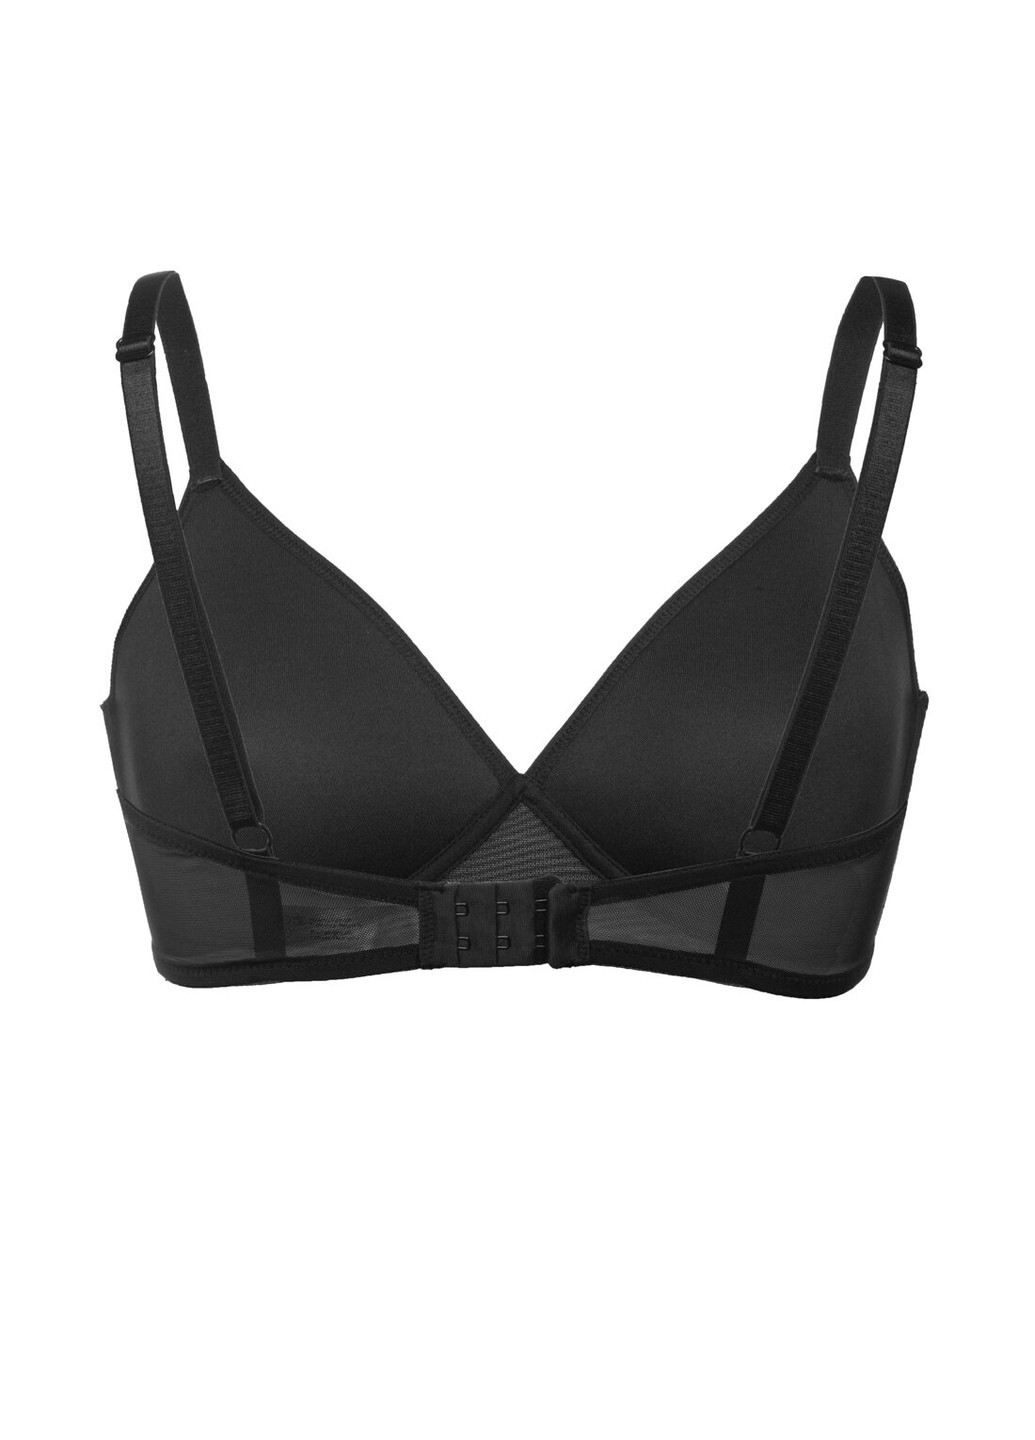 Чёрный бюстгальтер soft-bra без push-up из тонкого формованного материала монофлит без косточек (spacer) черный l1514a adelita Luna